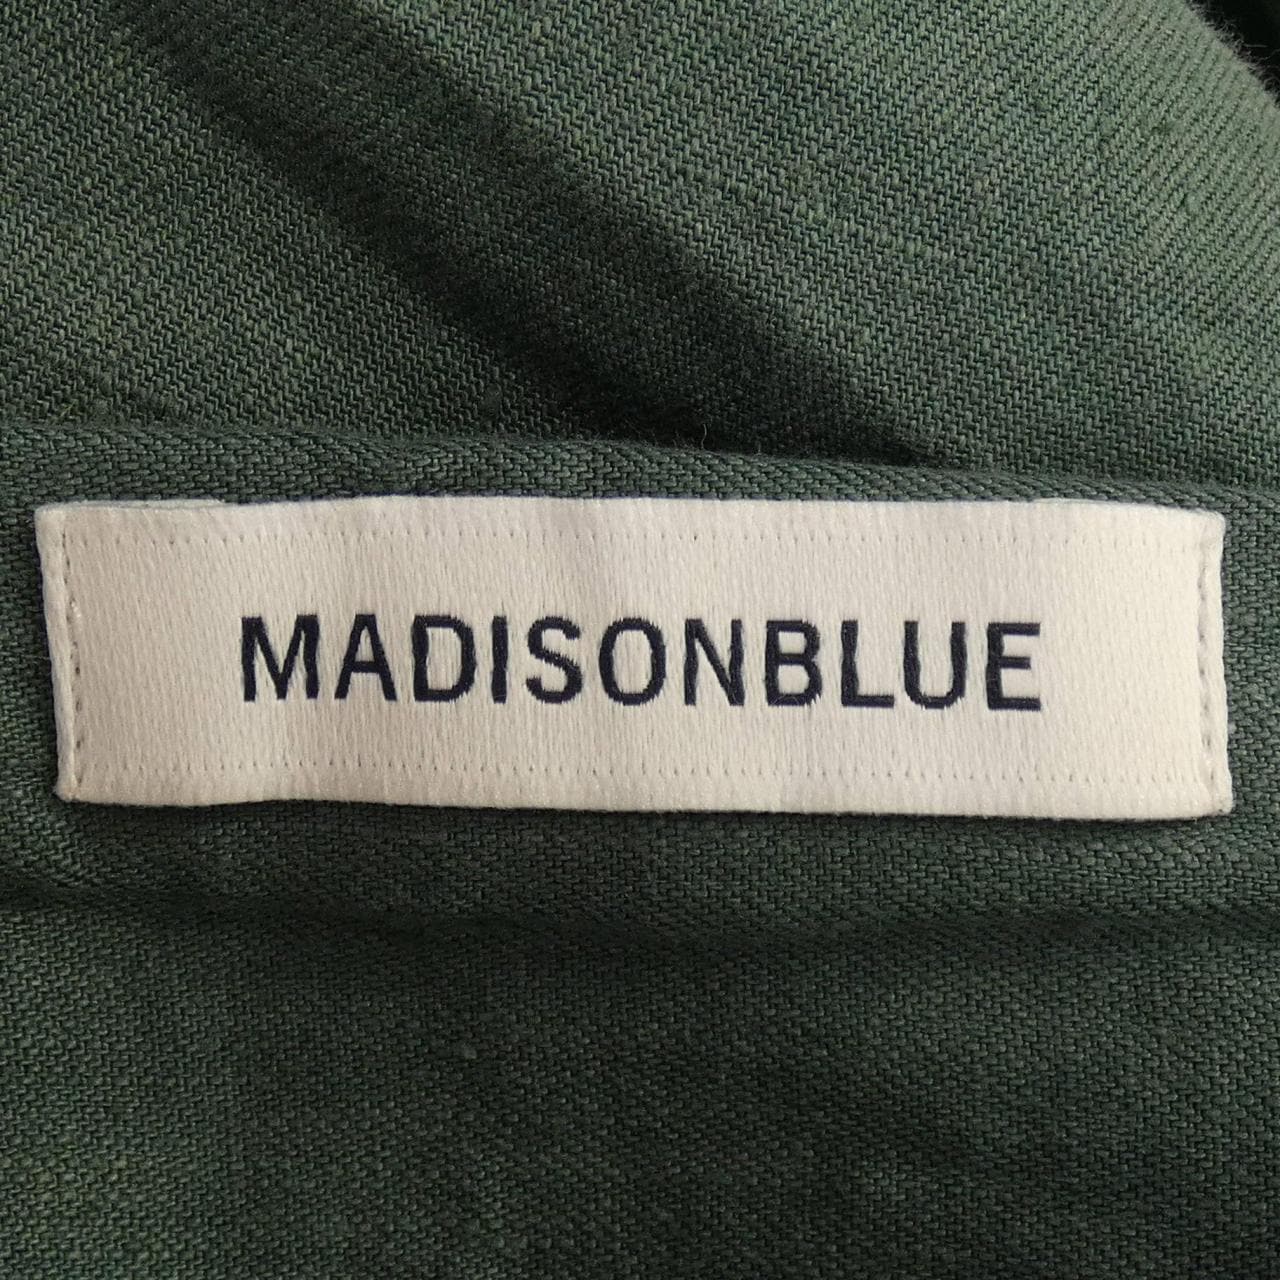 Madison blue MADISON BLUE skirt